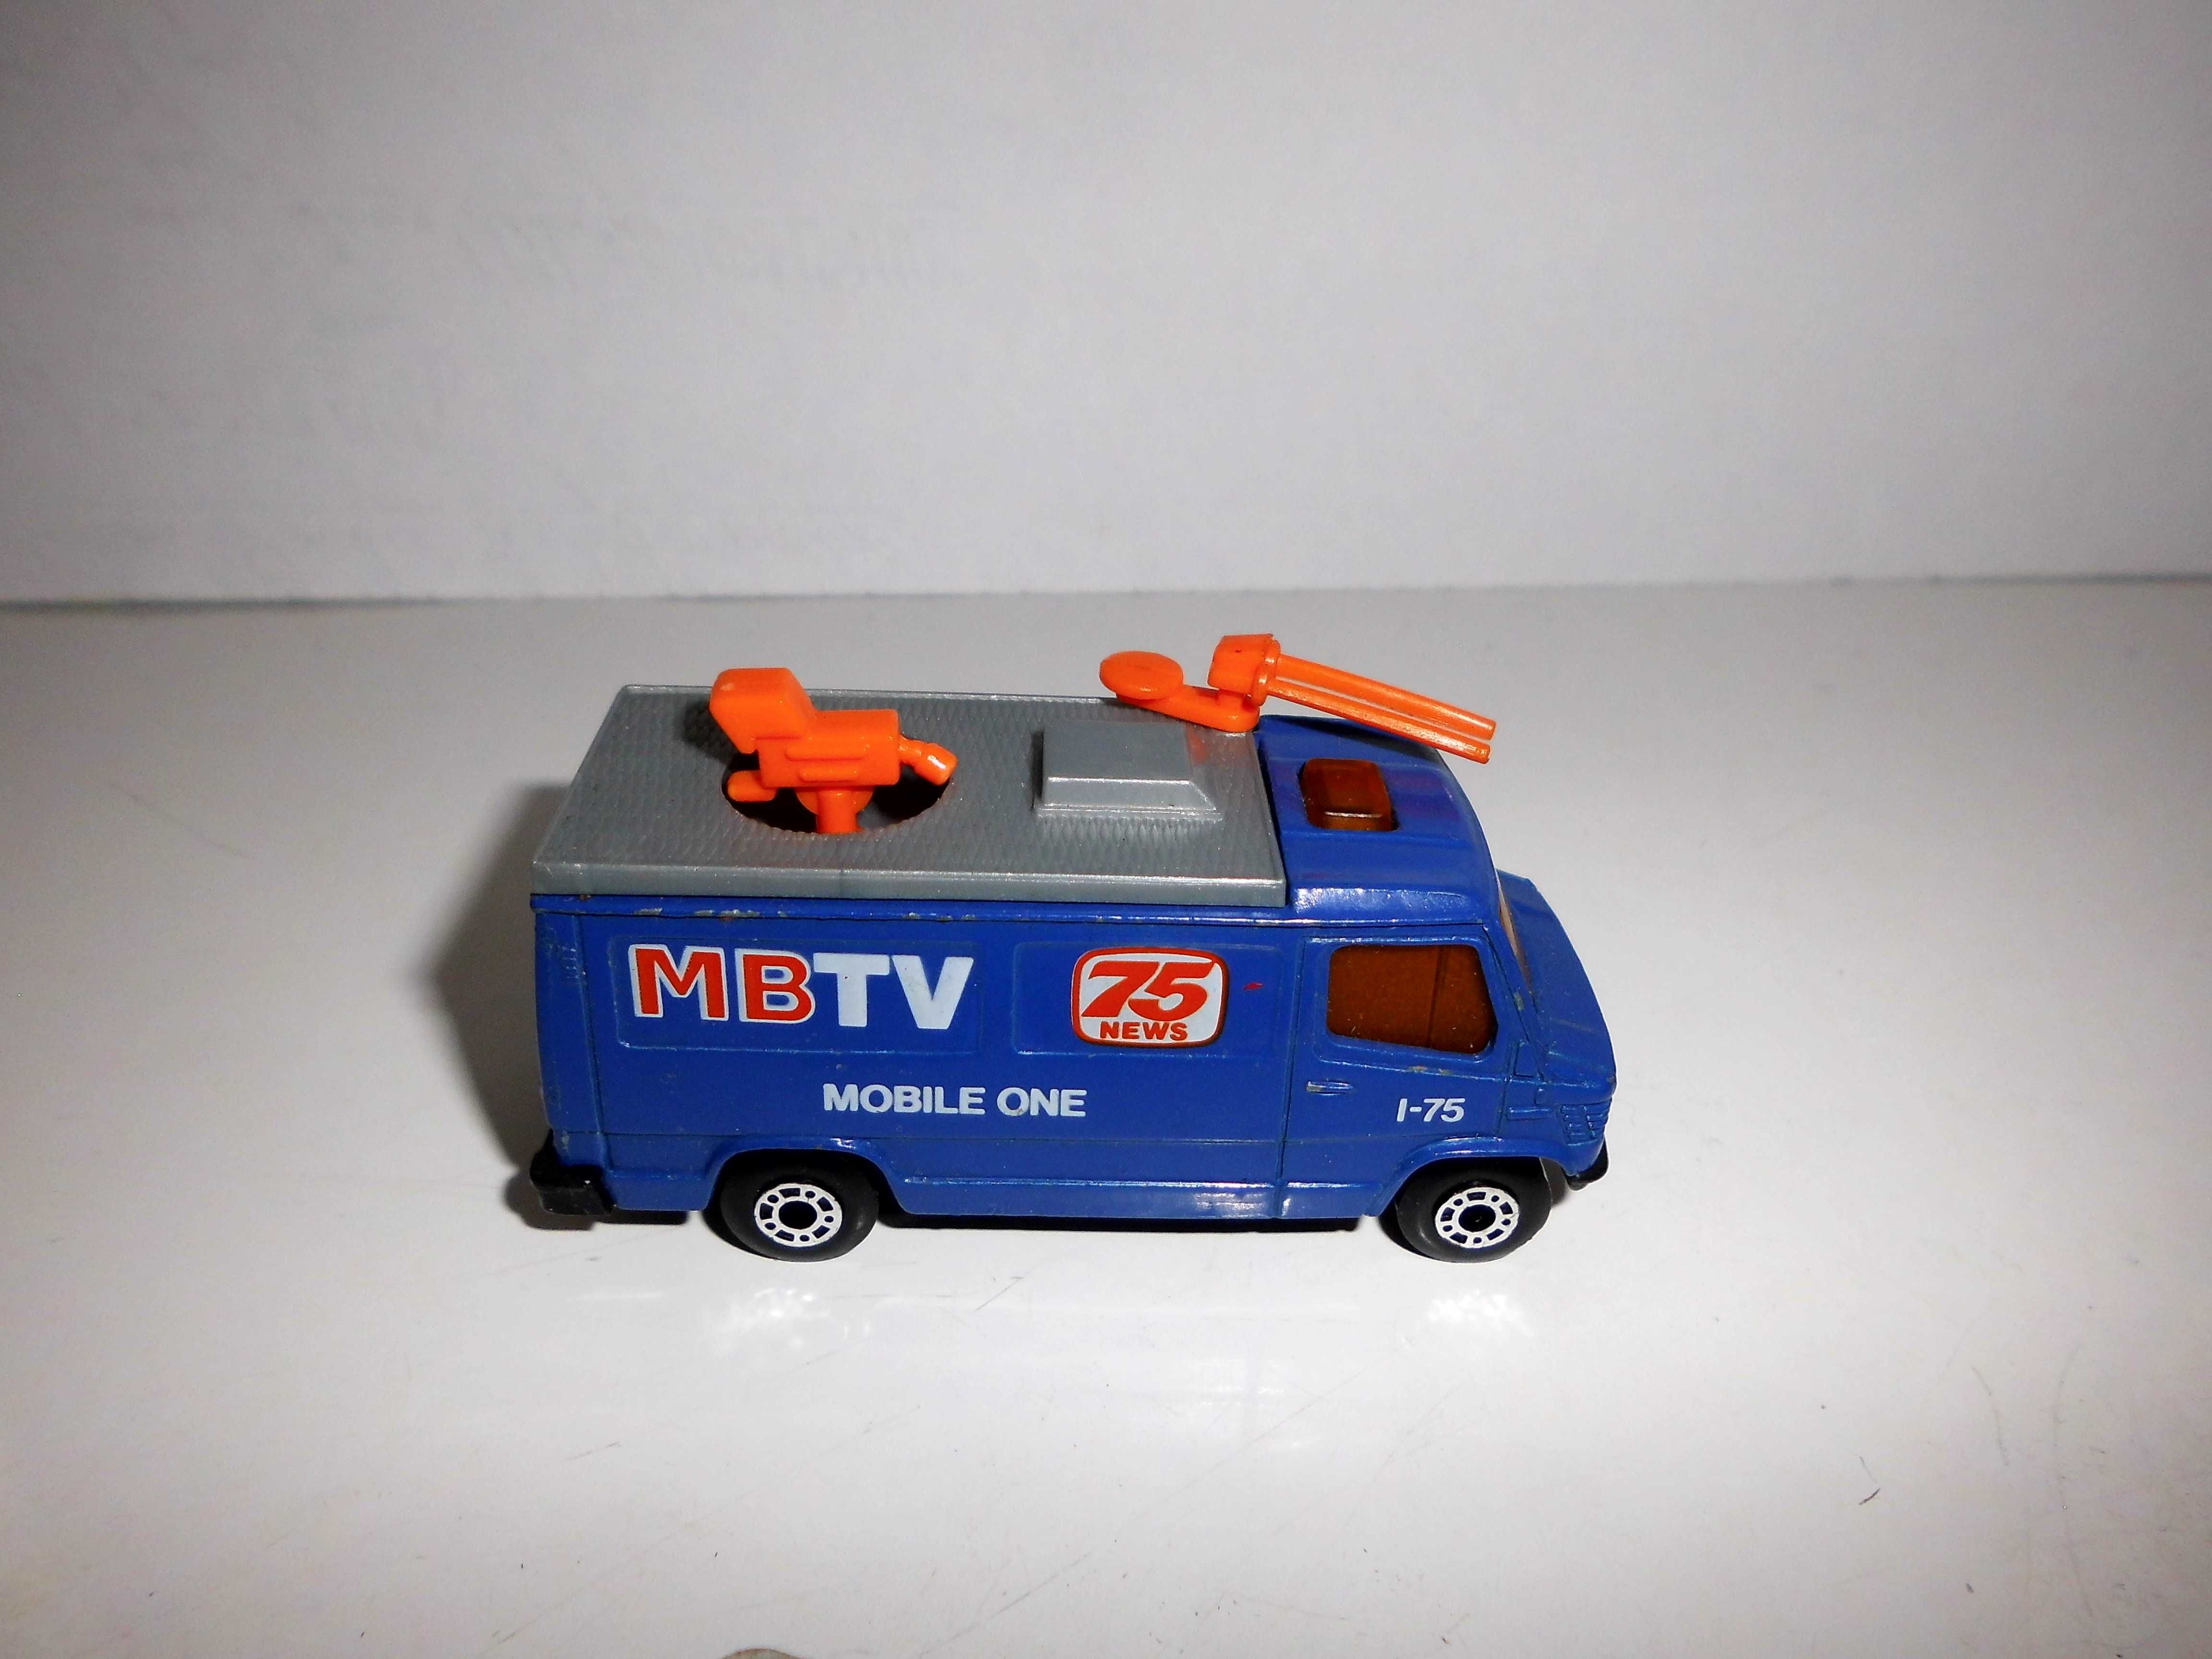 Matchbox Mercedes TV News Truck z 1989 r.